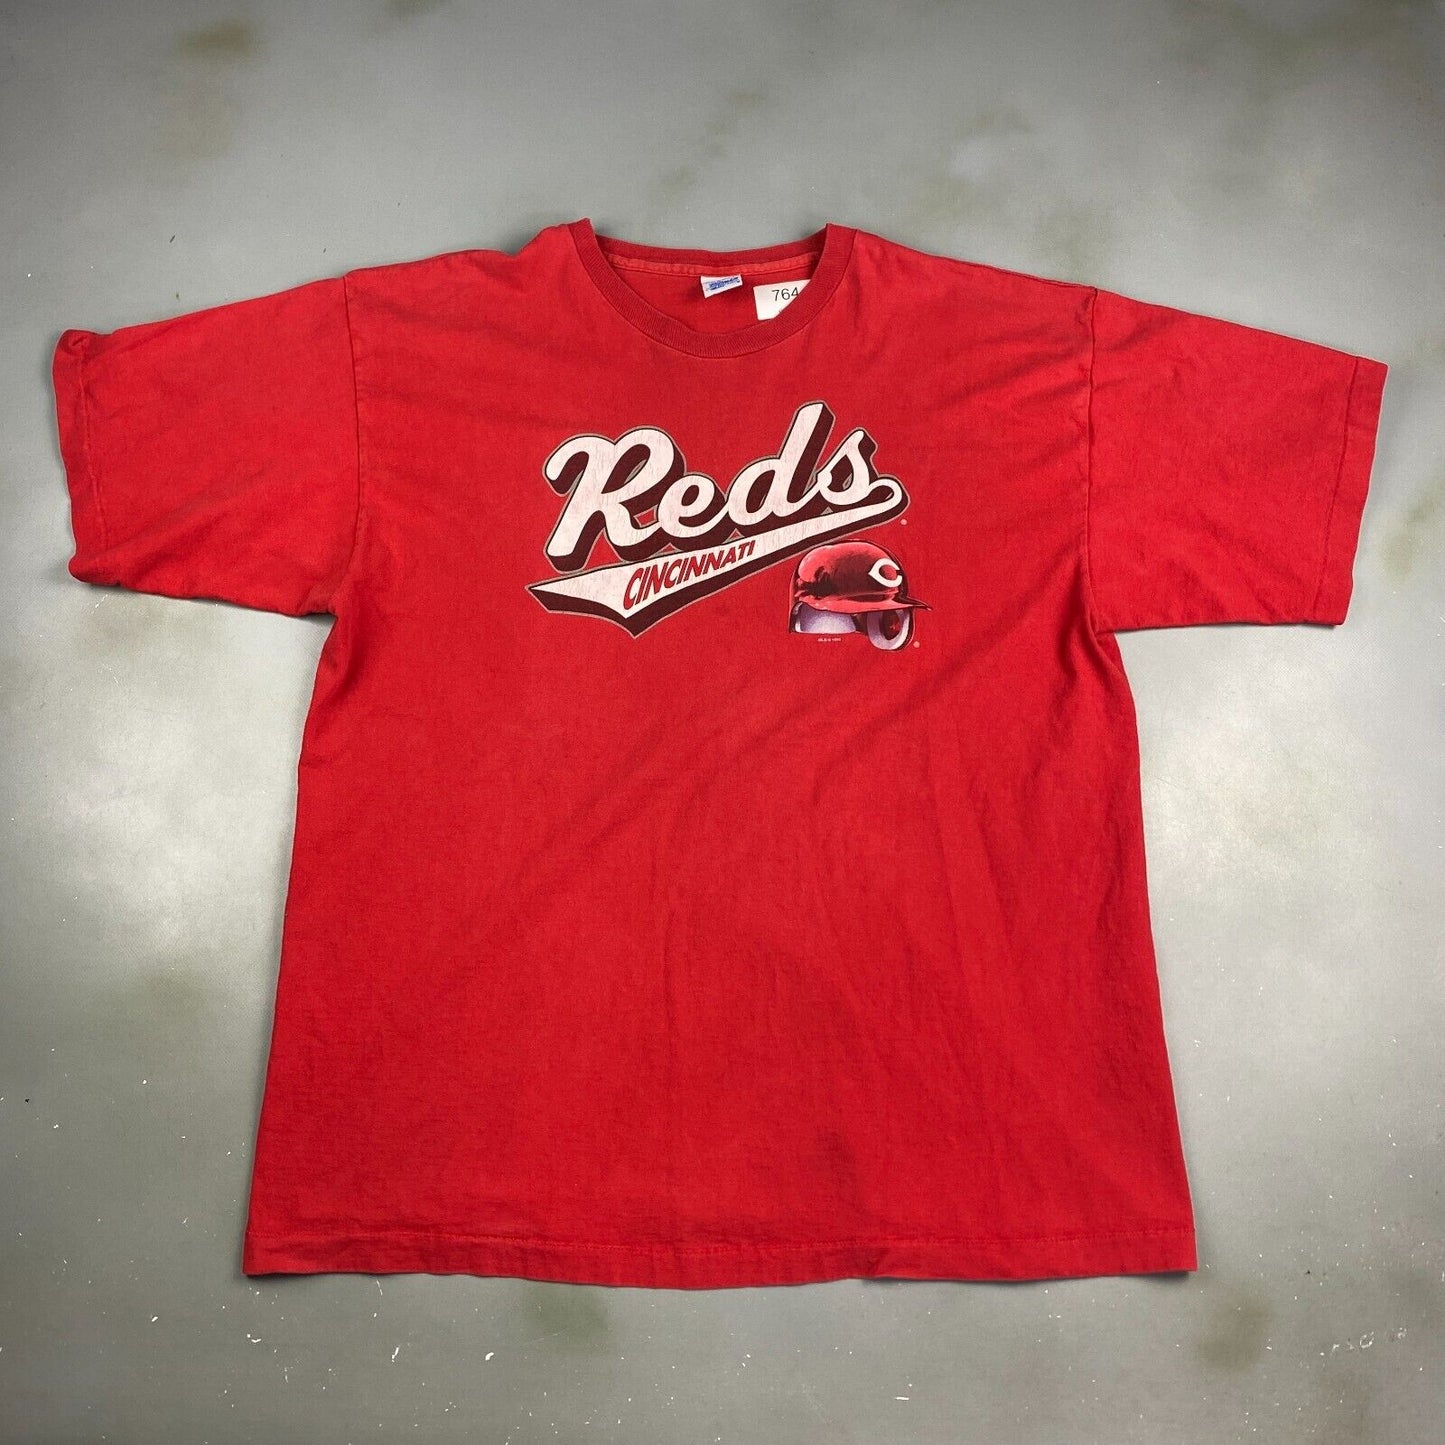 VINTAGE 1995 Cincinnati Reds MLB Baseball Red T-Shirt sz XXL Men Adult MadeinUSA